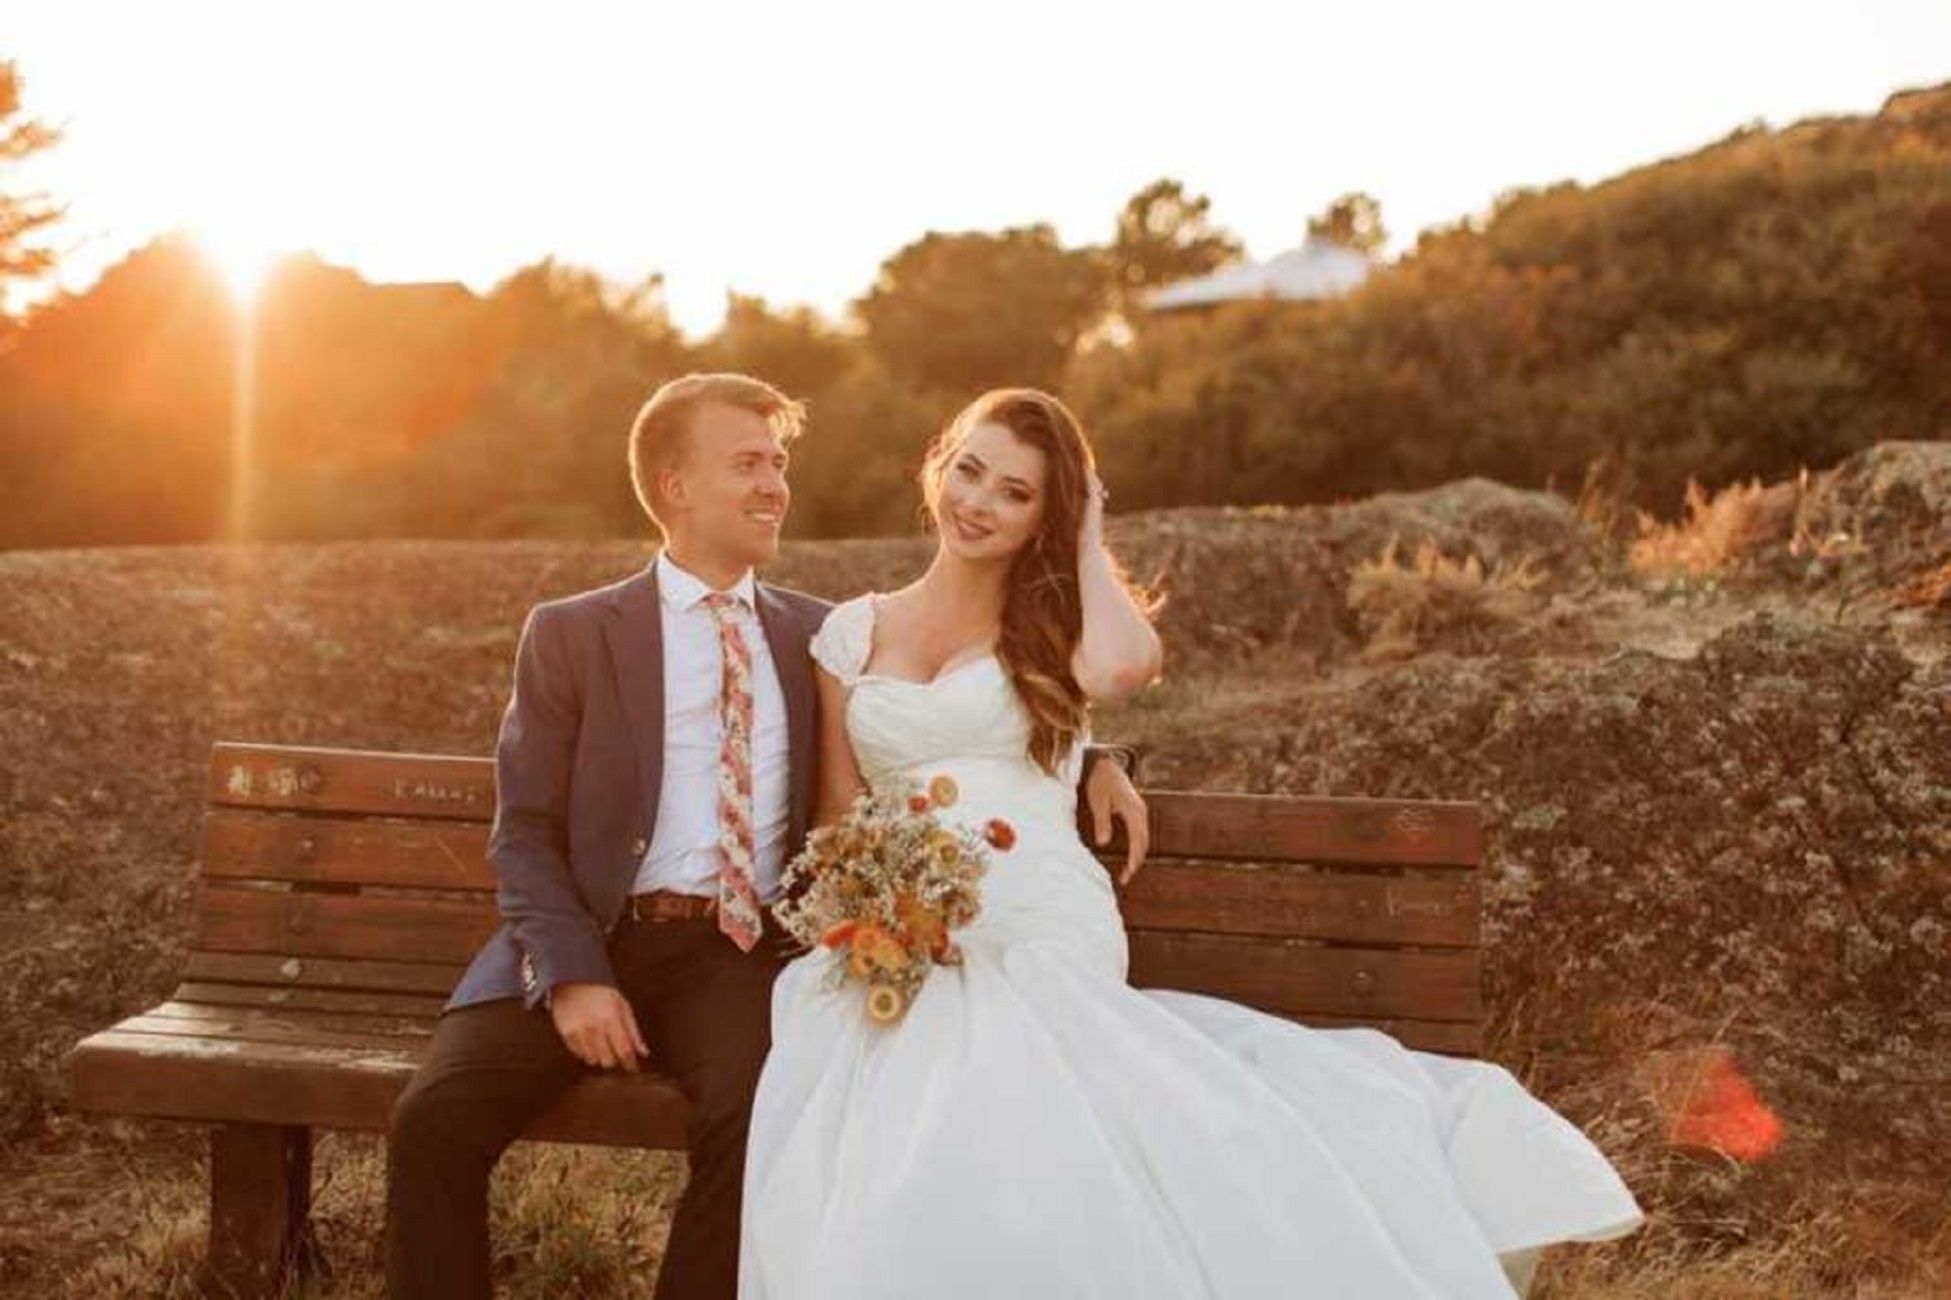 Se vuelve a casar con su marido tras perder la memoria en un accidente / Instagram